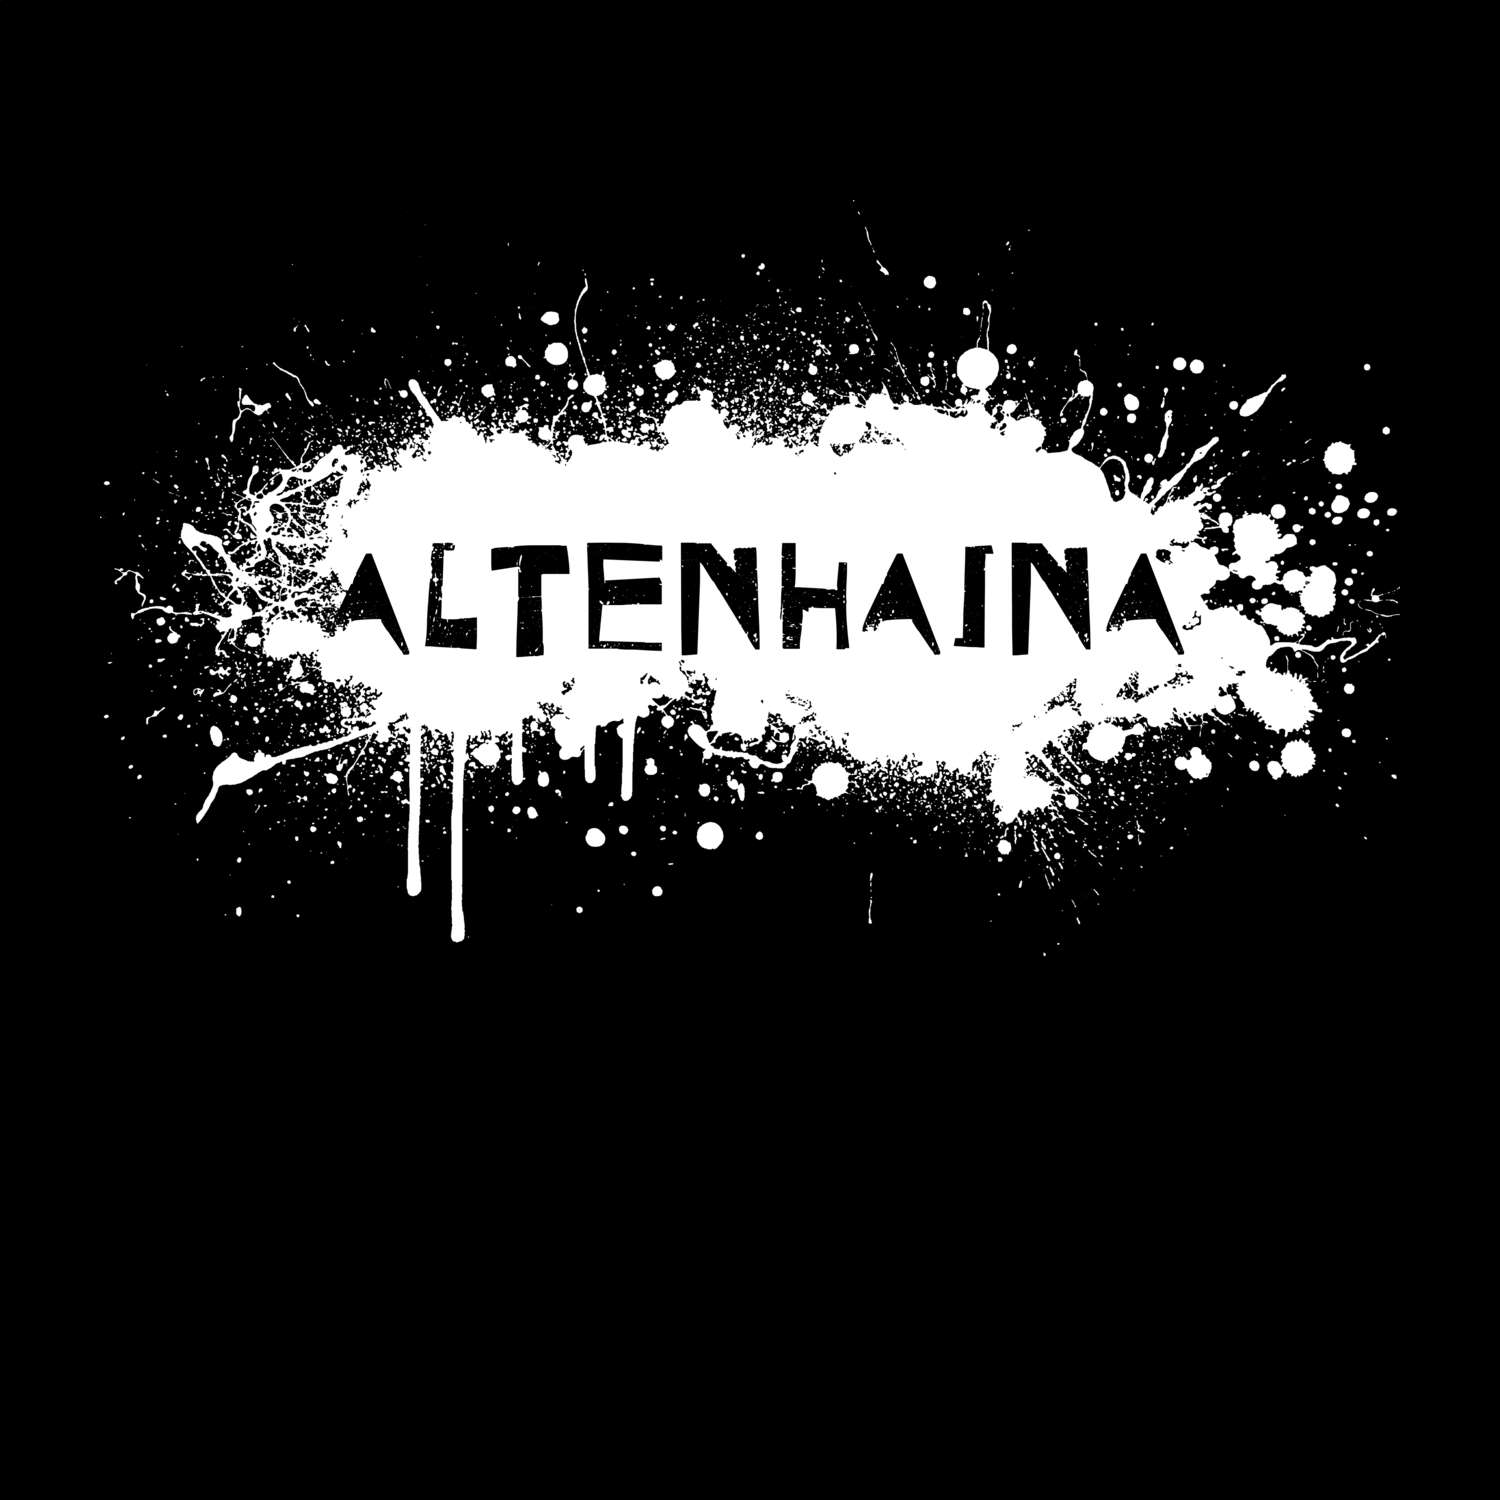 Altenhaina T-Shirt »Paint Splash Punk«